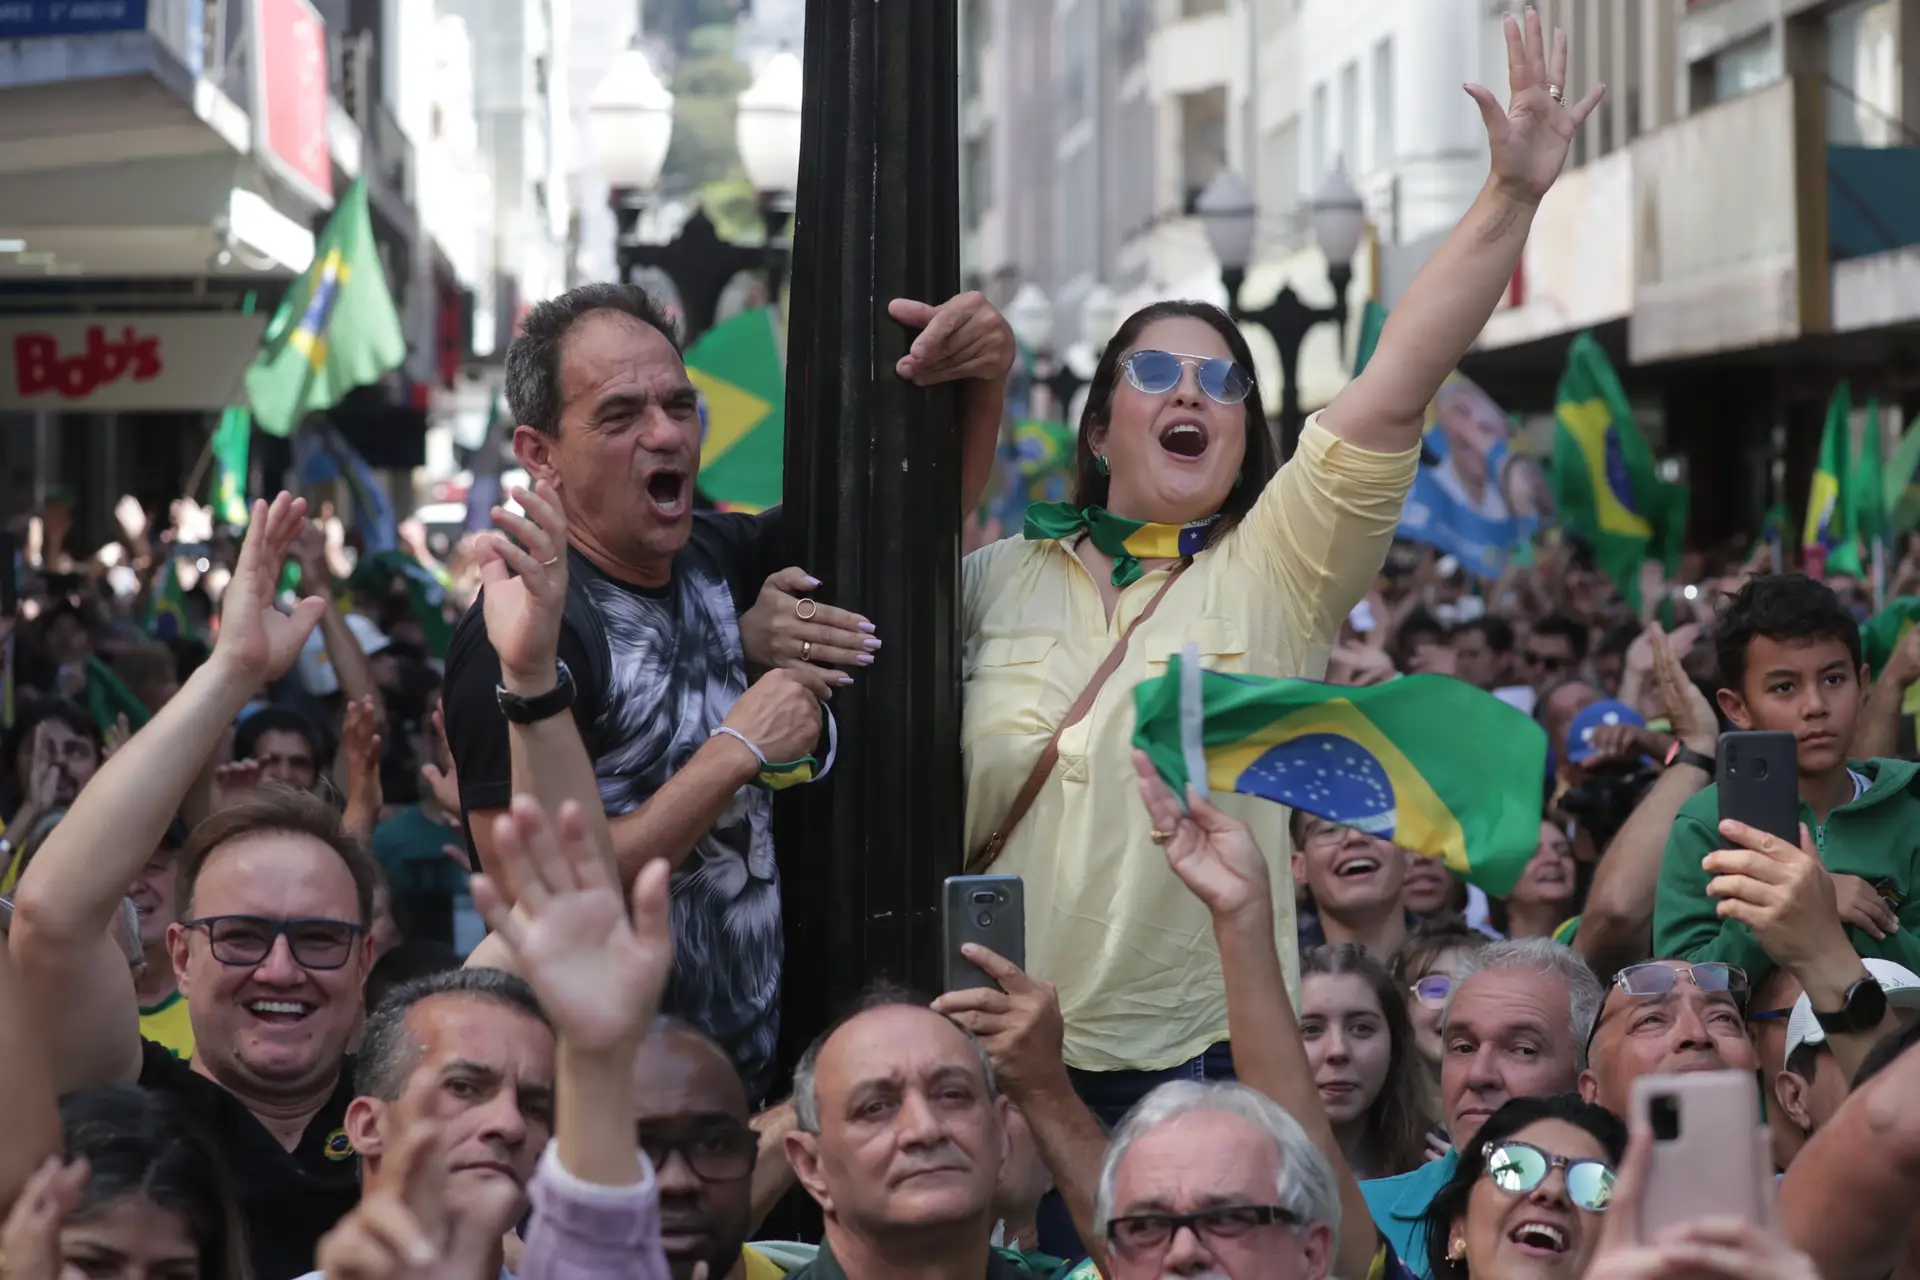 Presidenciais no Brasil. O arranque de uma campanha com risco de violência política